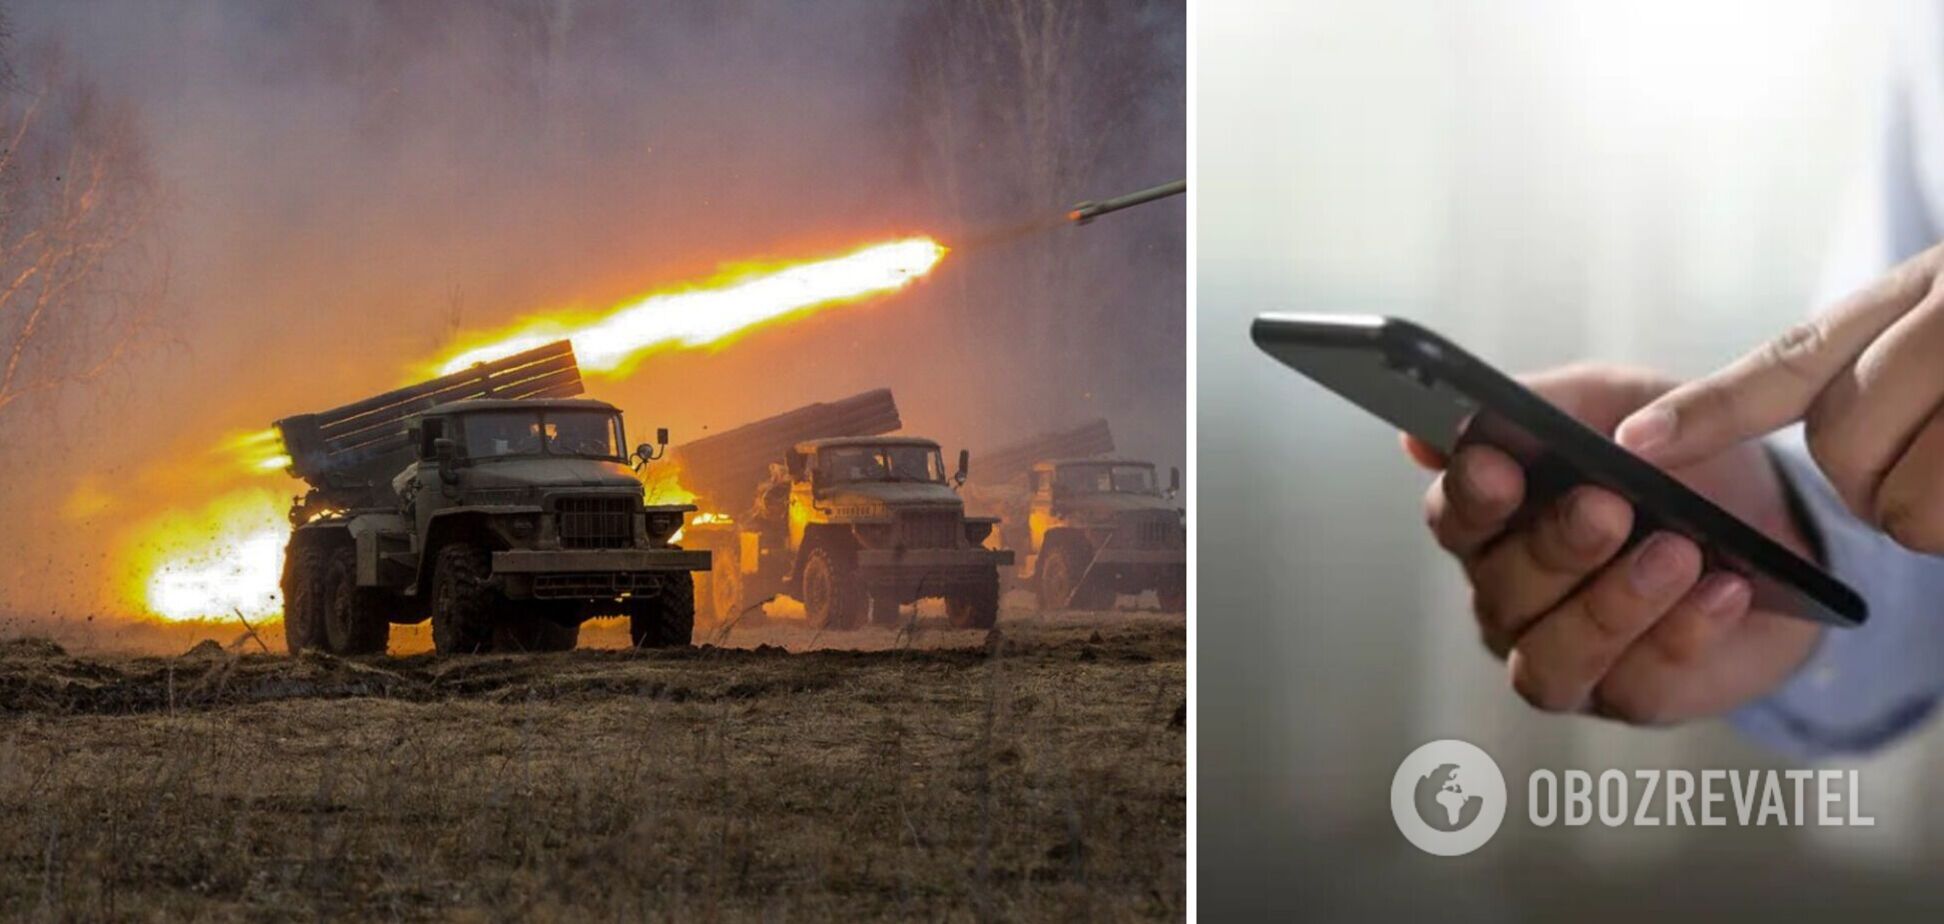 Це новий вид інформаційної небезпеки: українцям пояснили, як ворог намагається з'ясувати точну локацію для коригування вогню